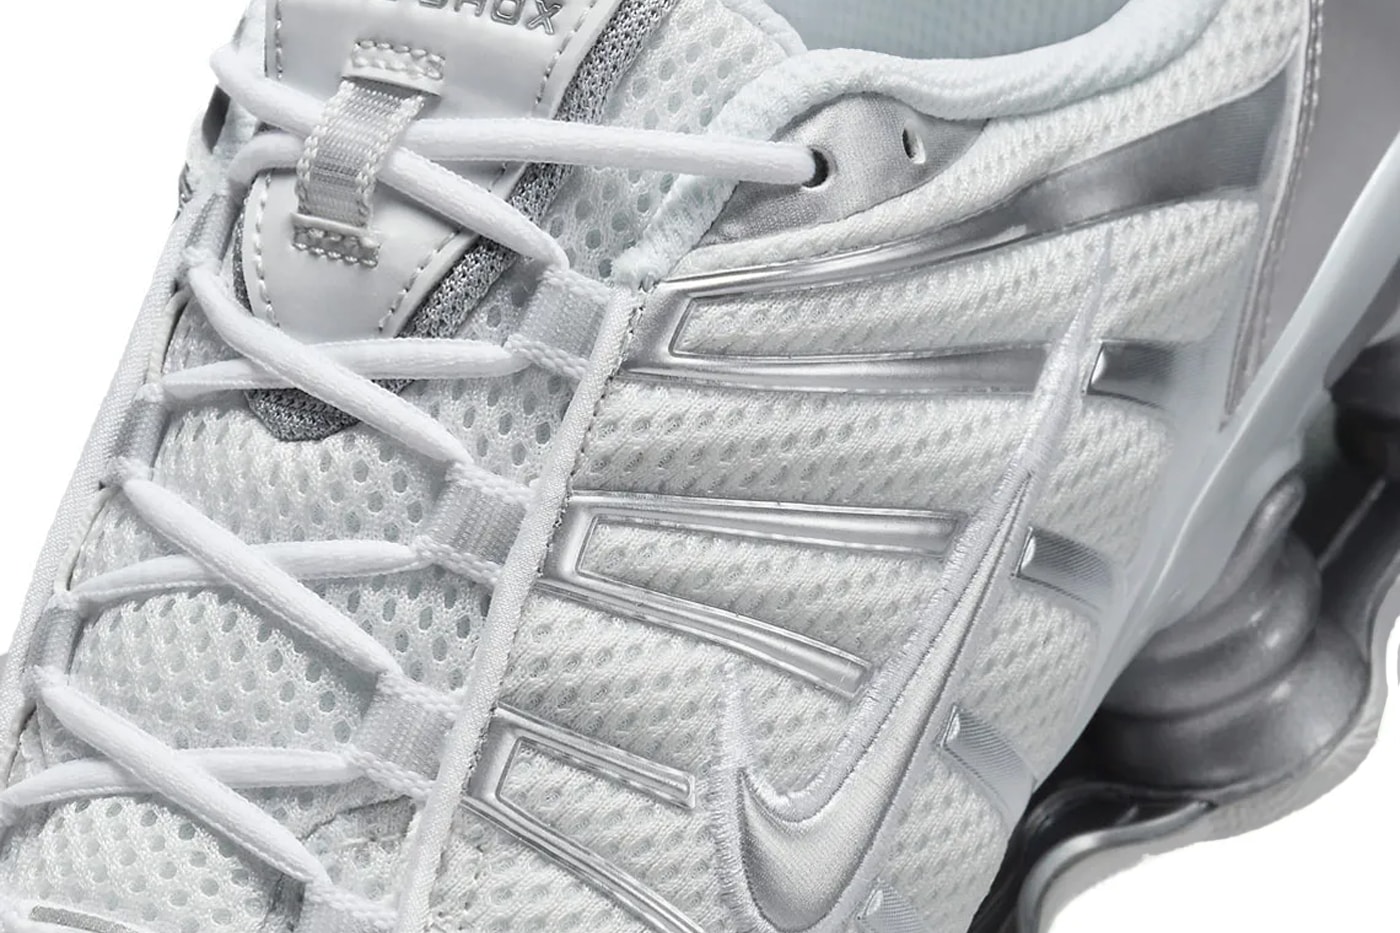 Nike Shox TL Arrives in a Monochromatic Silver Palette